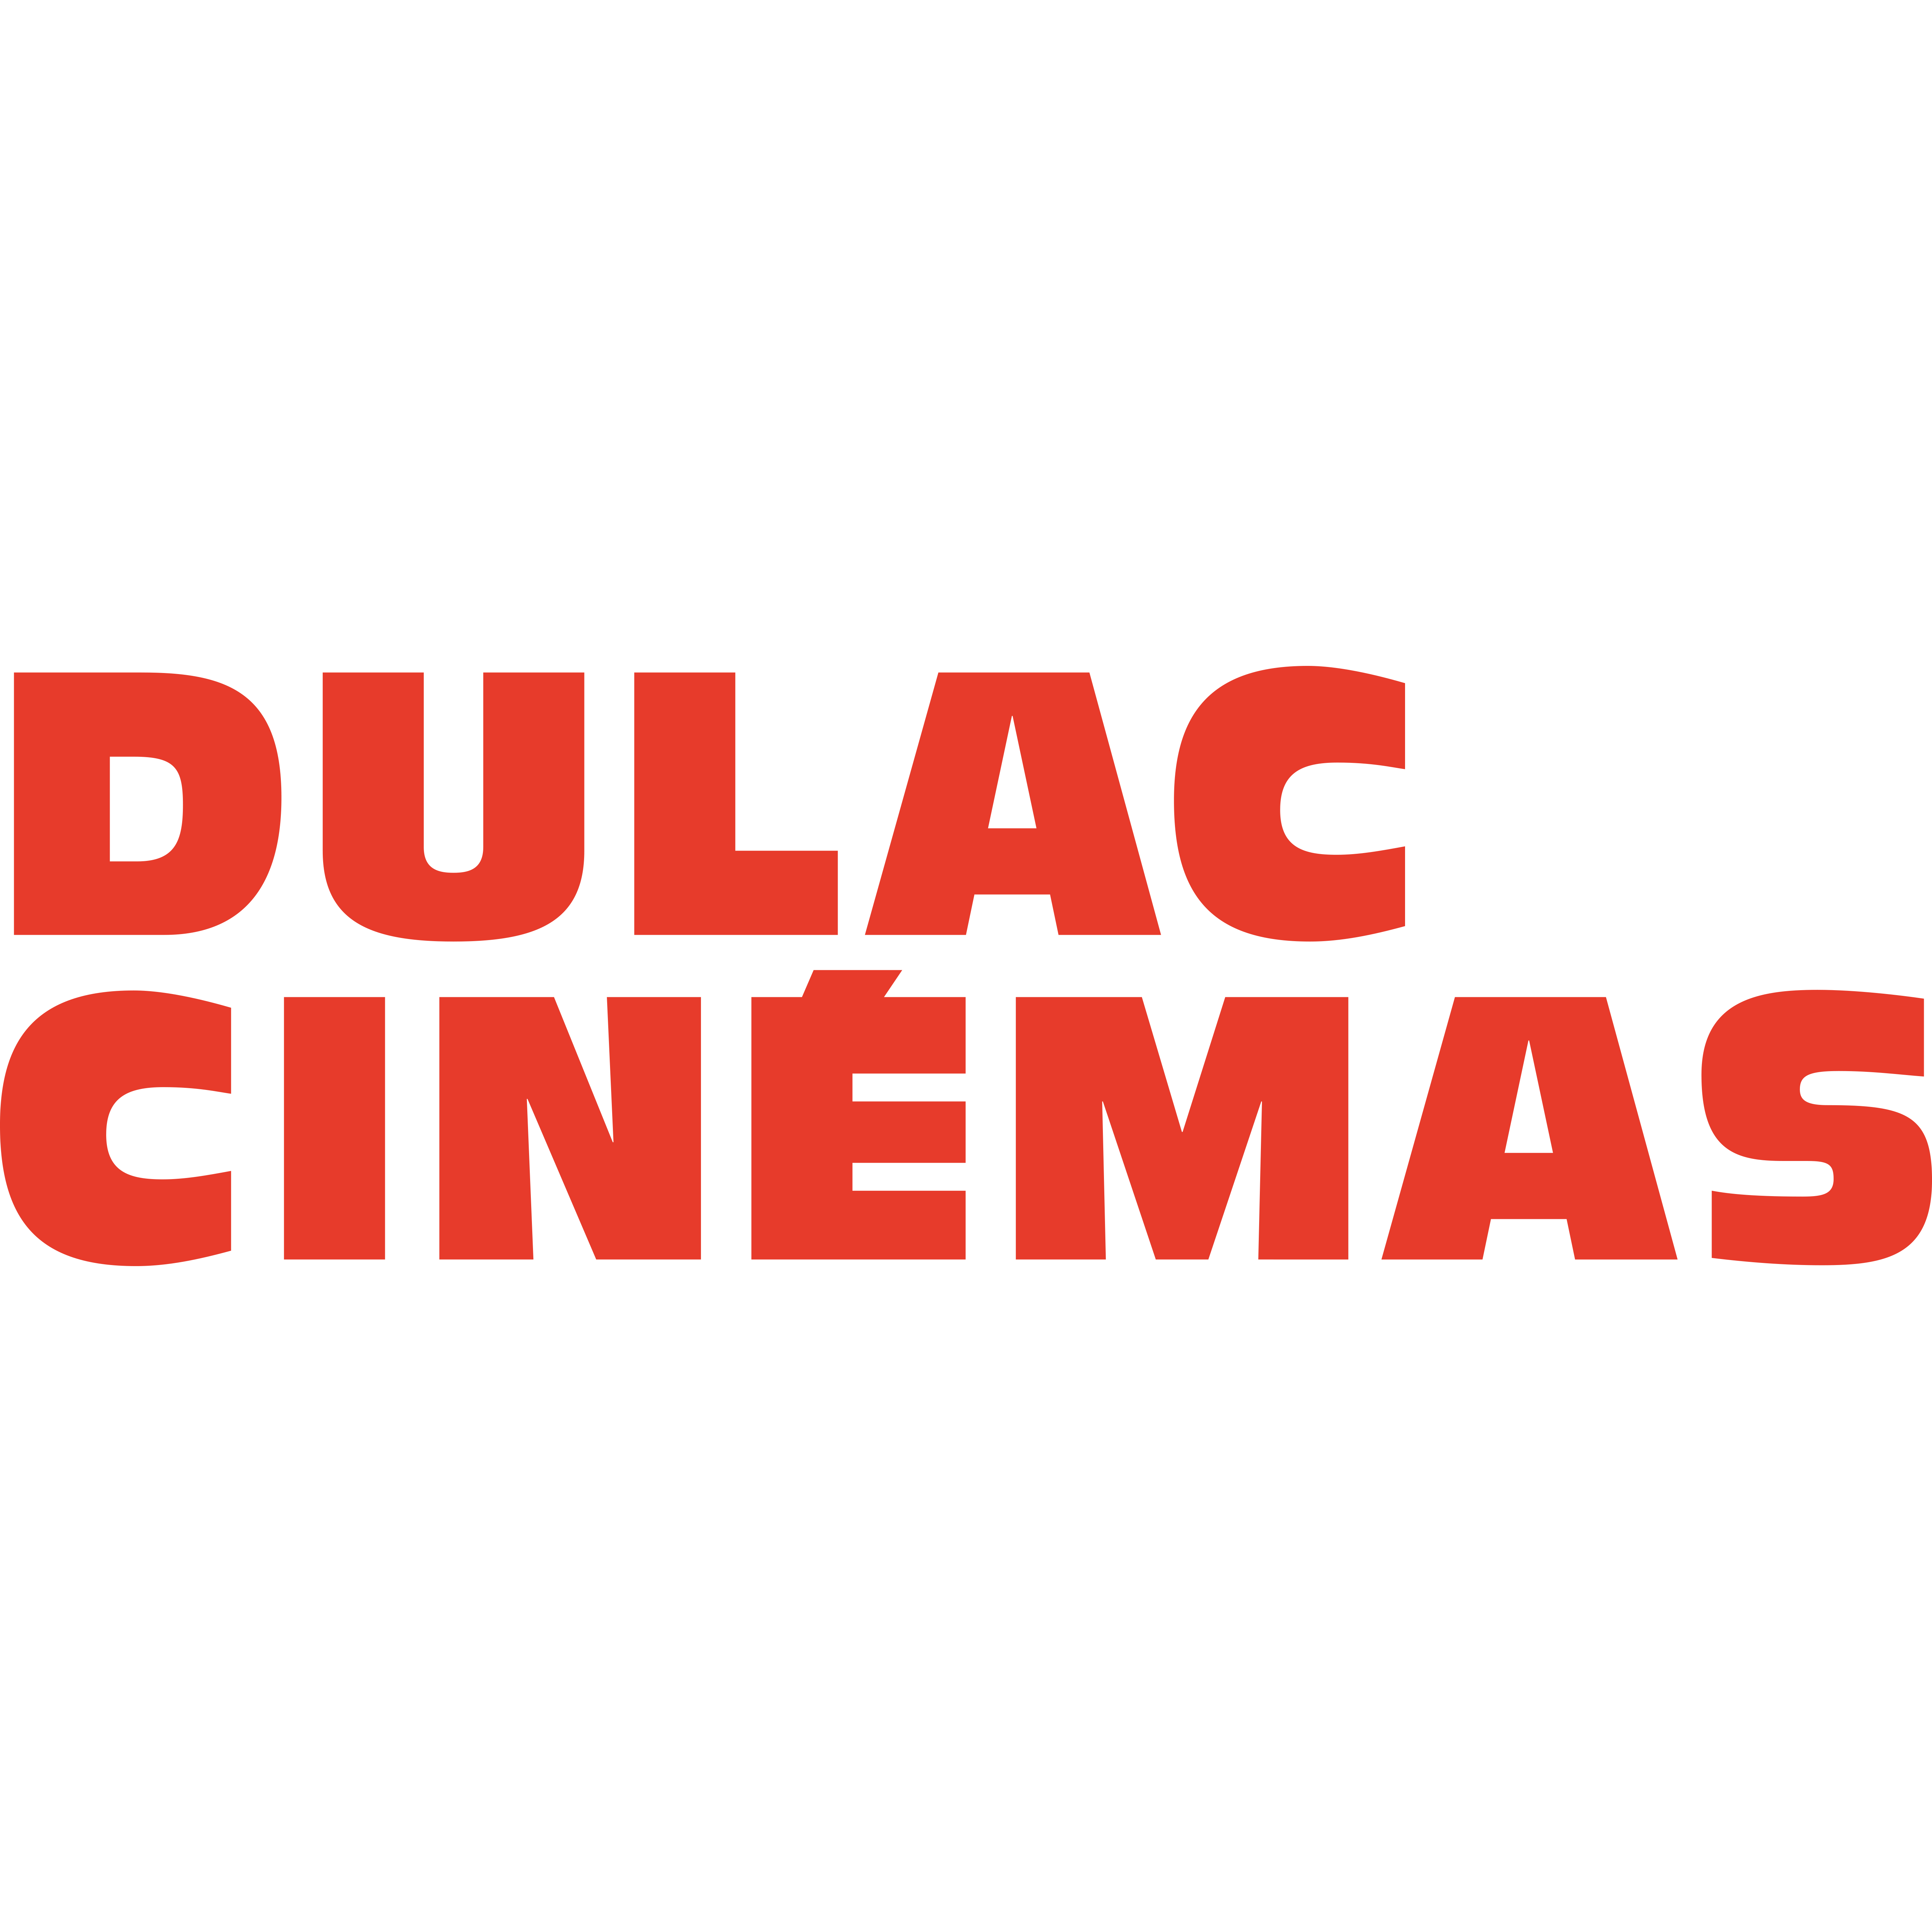 DULAC_CINEMAS_ORANGE_CMJN